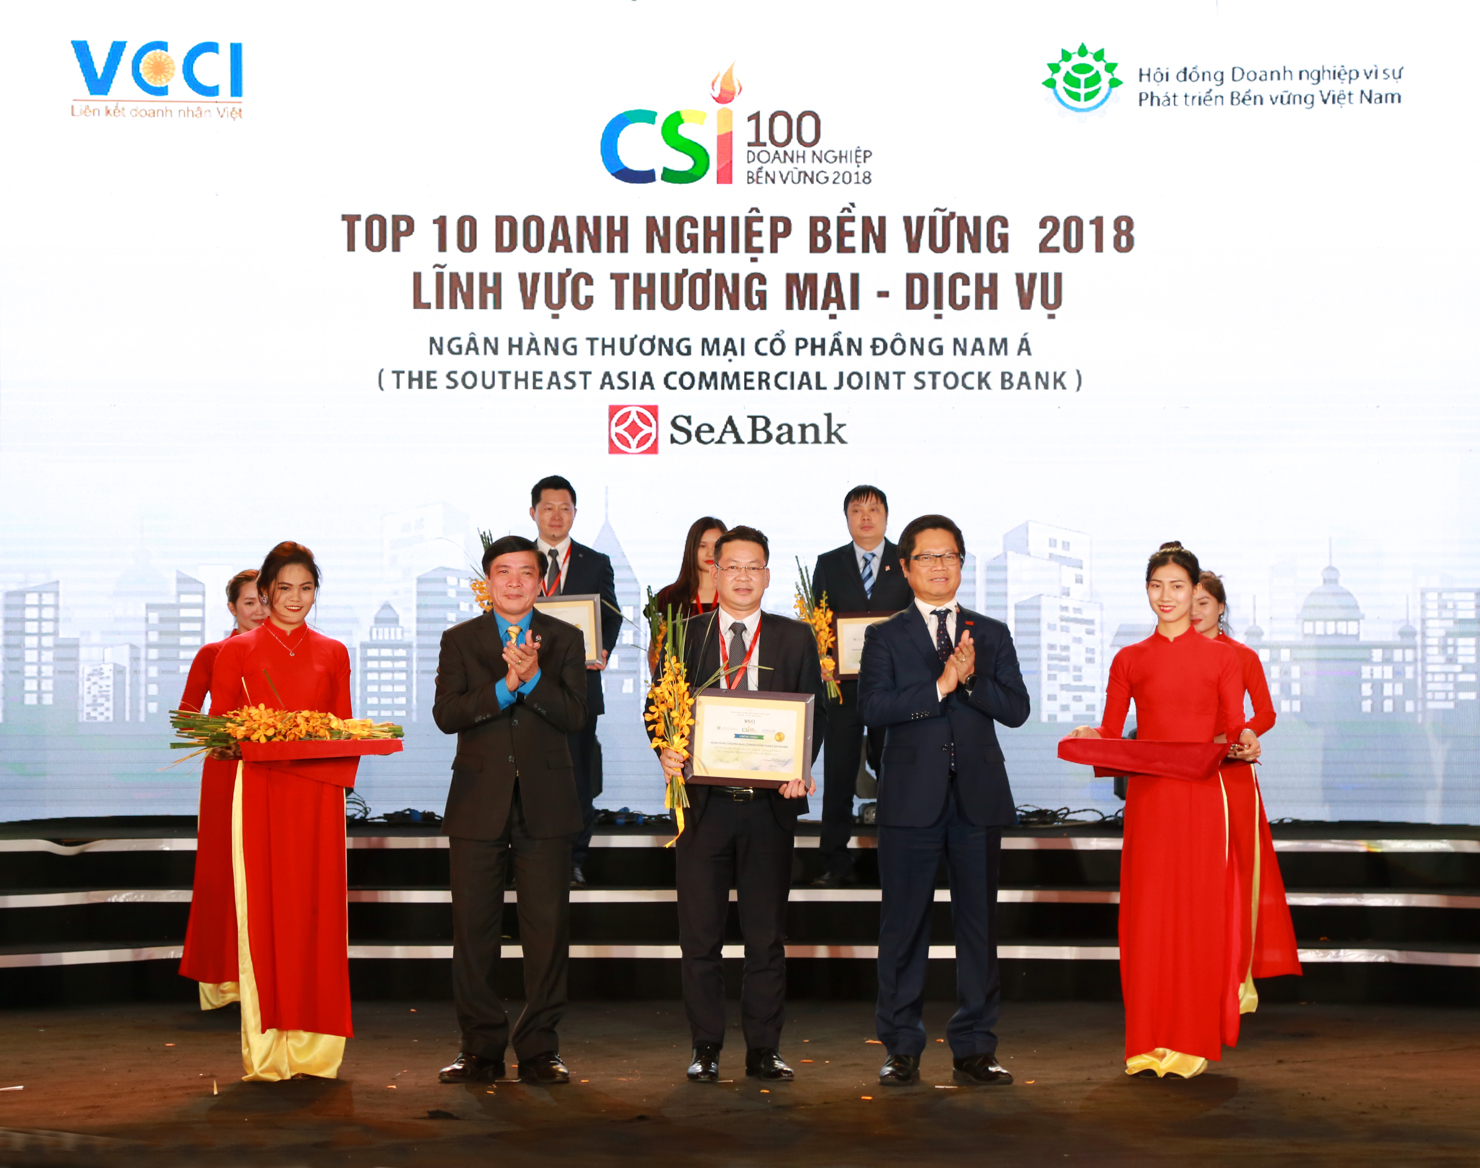 Ngân hàng TMCP Đông Nam Á (SeABank) vinh dự được trao tặng danh hiệu Top 10 Doanh nghiệp bền vững 2018 trong lĩnh vực Thương mại - Dịch vụ. 